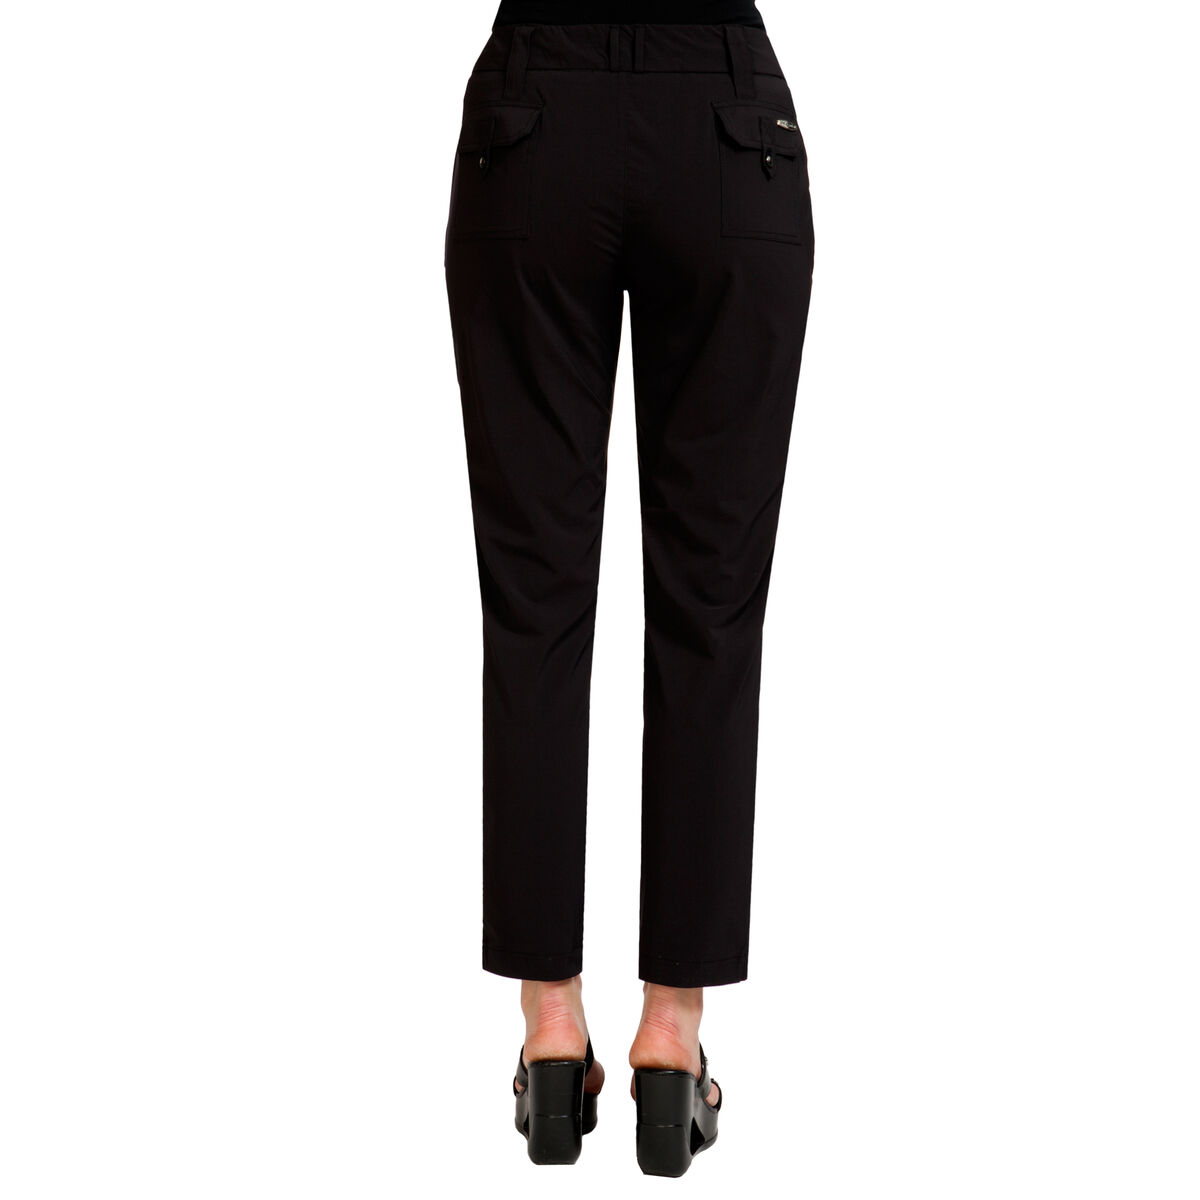 Long Pants/Trousers: Jamie Sadock Airwear Long Pants - Black